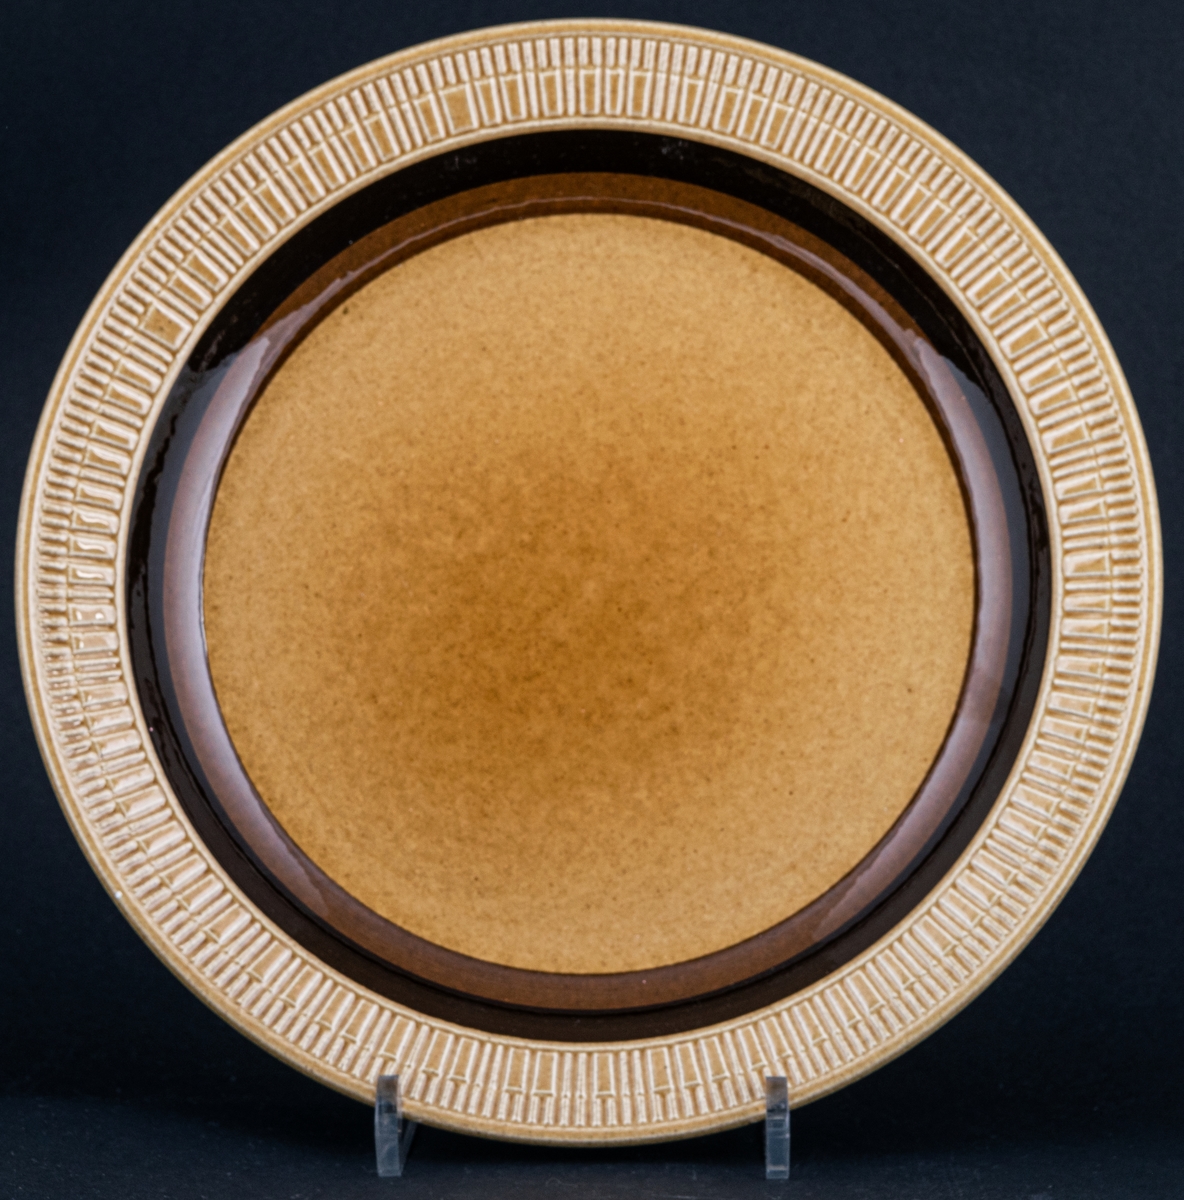 Tallrik, flat tillhörande servisen Terra, ljusbrun bottenglasyr med två mörkare band i brunt samt en reliefdekor ytterst på brättet.
Design av Berit Ternell.